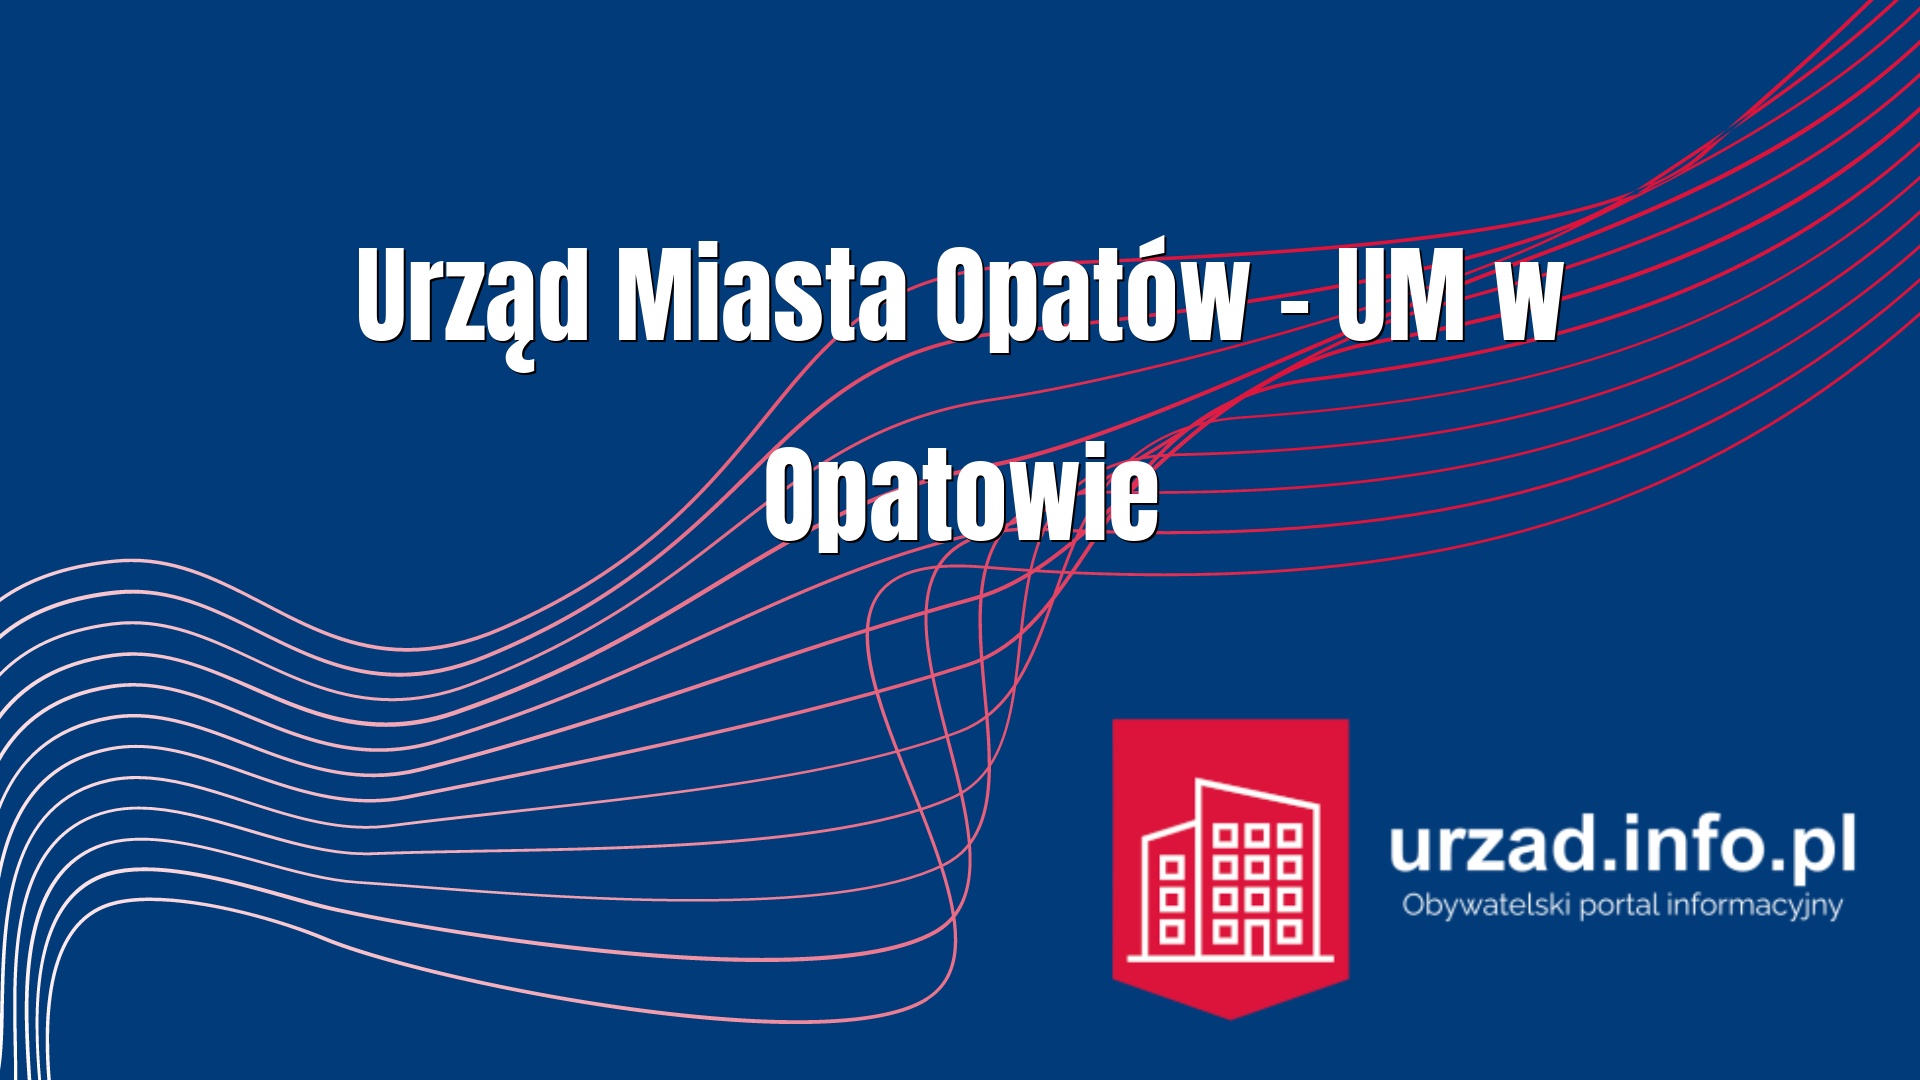 Urząd Miasta Opatów – UM w Opatowie